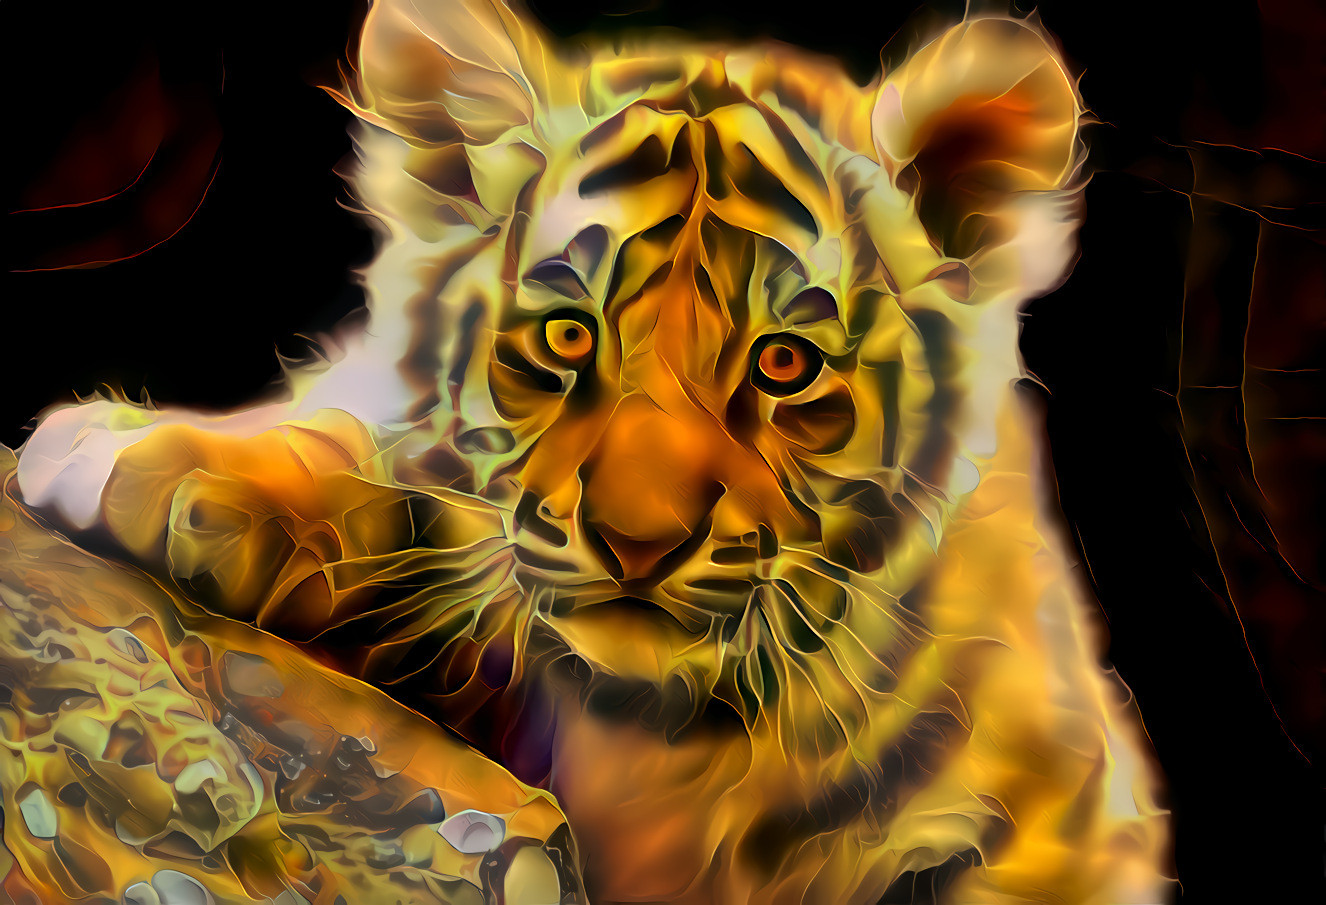 Cute Tiger Cub [1.2MP]